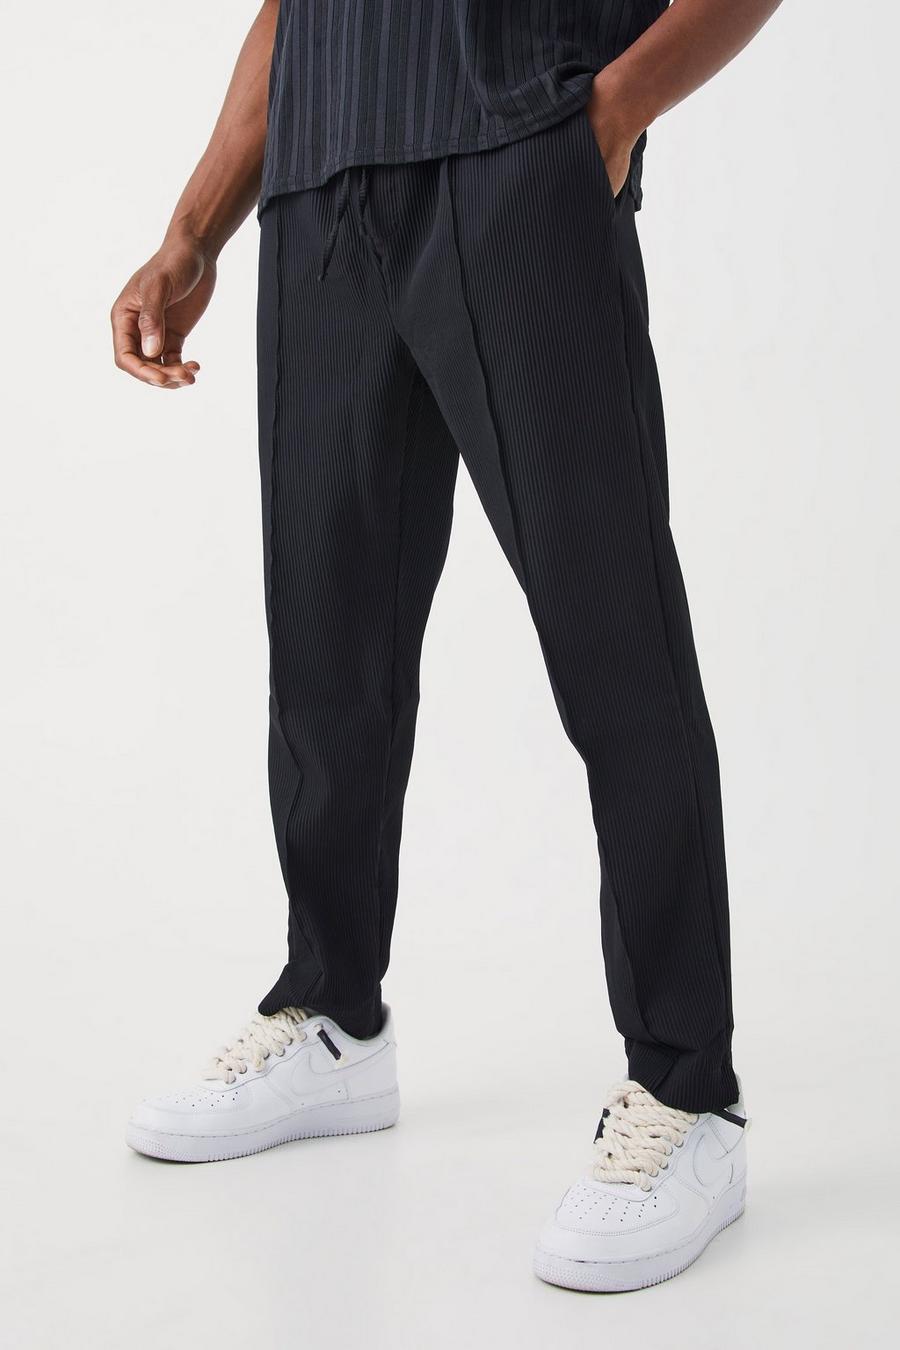 Pantaloni a pieghe Slim Fit con vita elasticizzata, Black nero